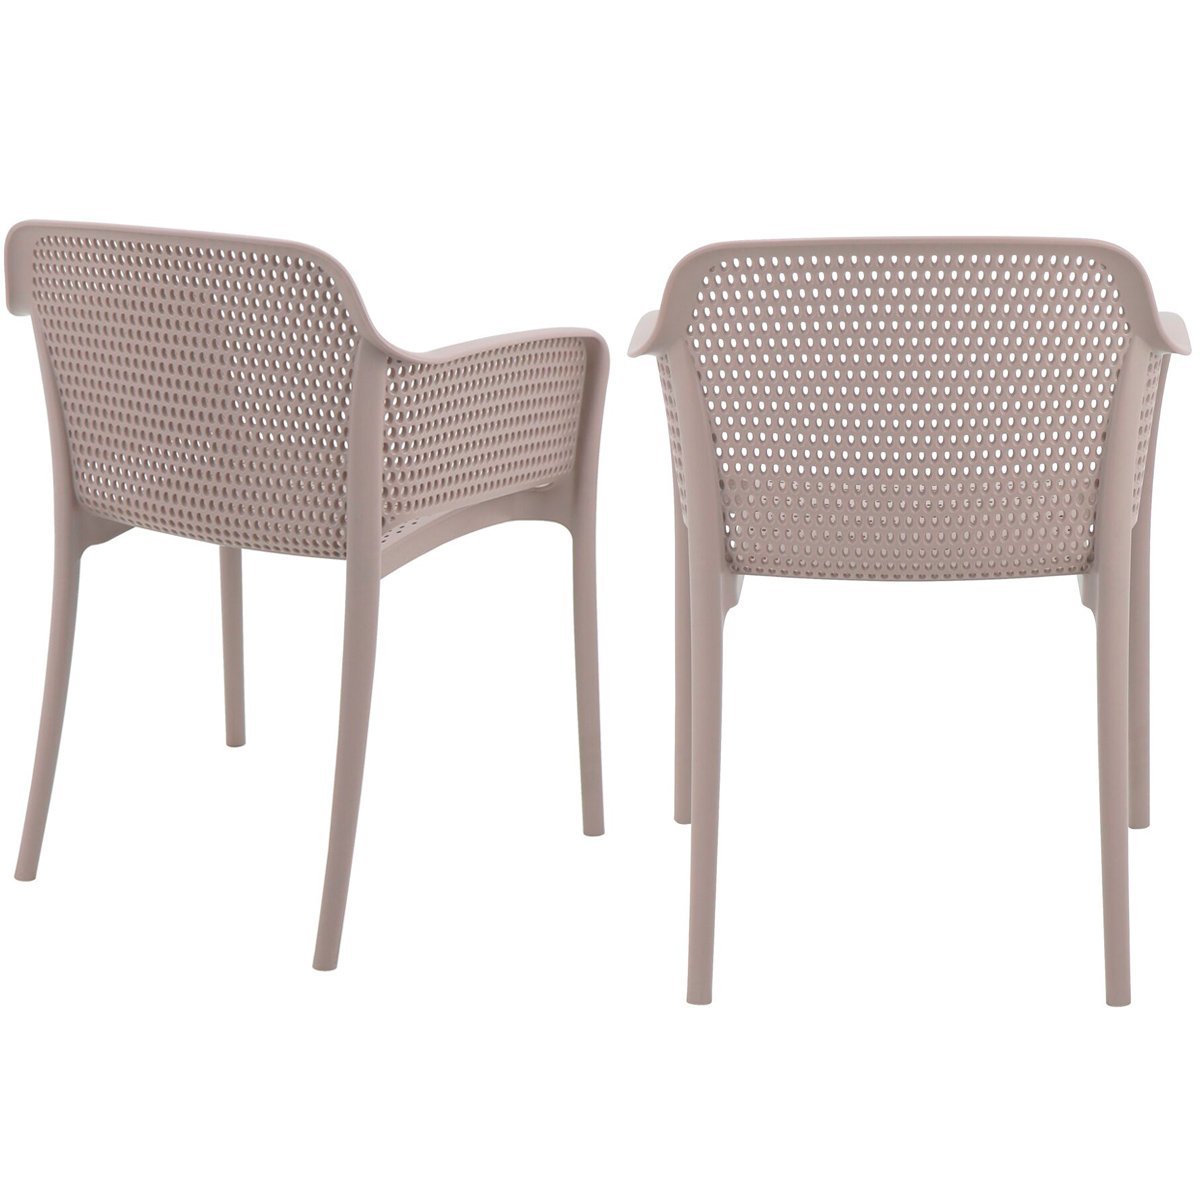 Conjunto 4 Cadeiras de Plástico em Polipropileno com Fibra de Vidro Gabriela - Tramontina - Camurça  - 2